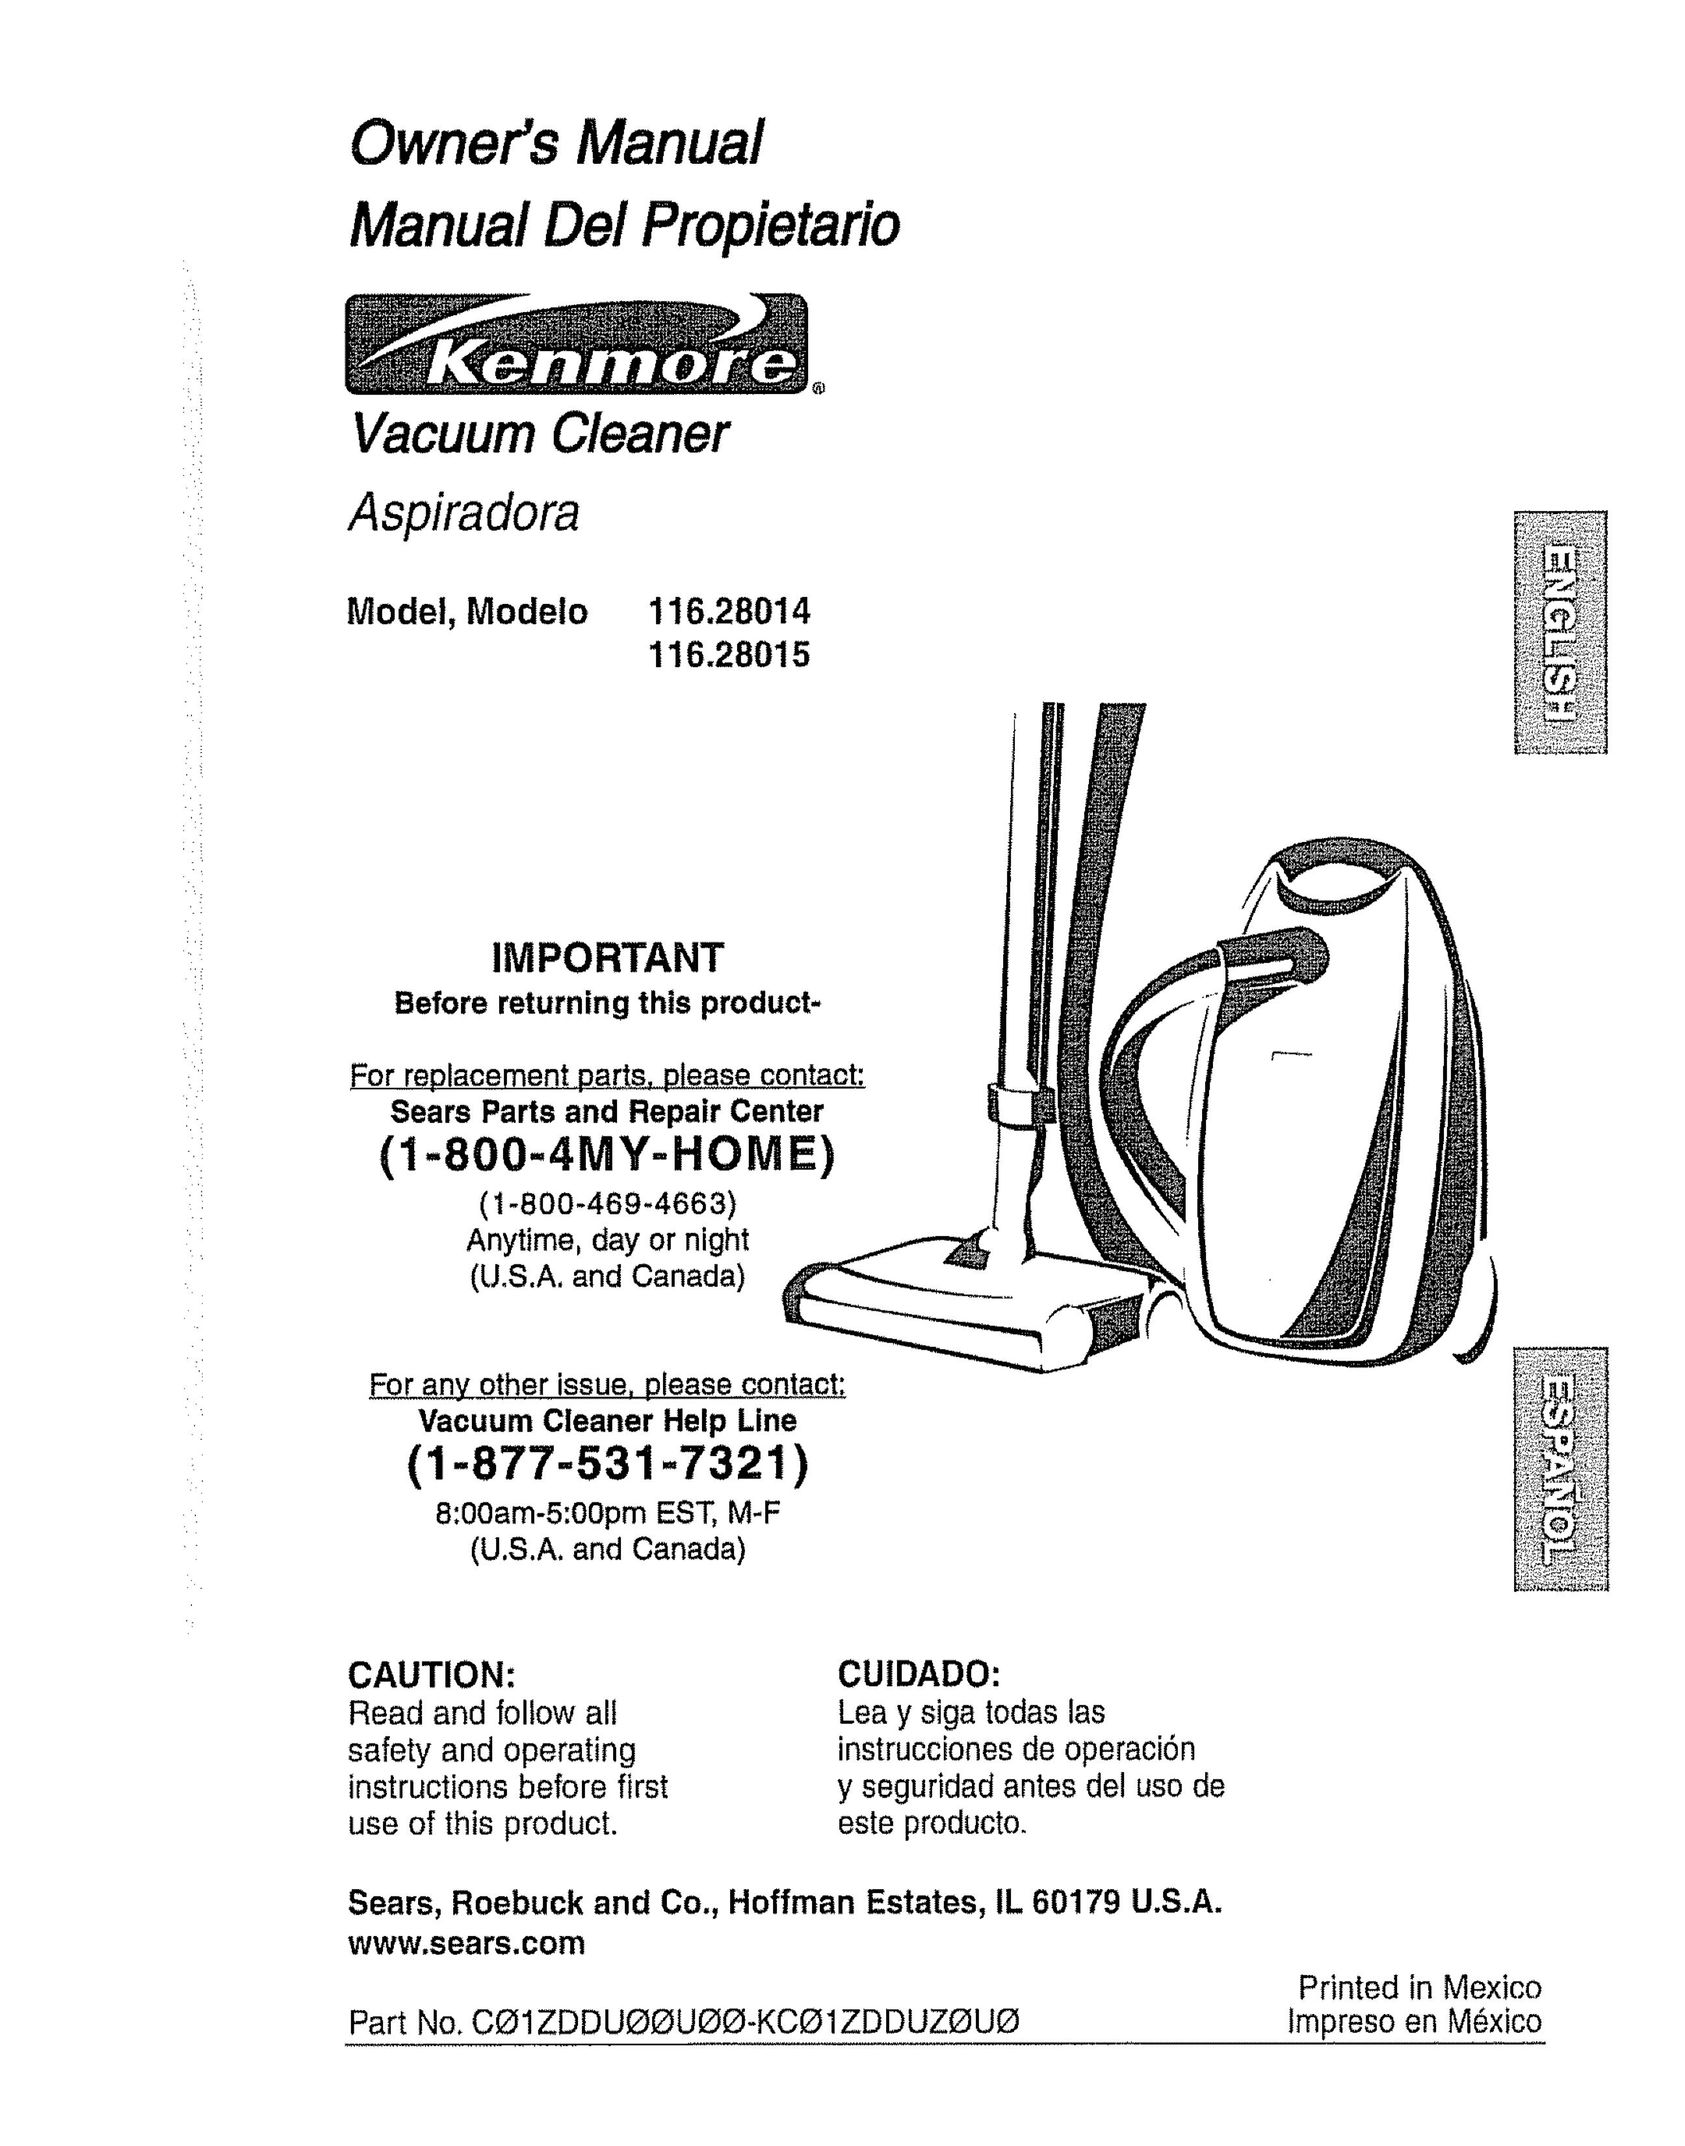 Kenmore 116.28015 Vacuum Cleaner User Manual